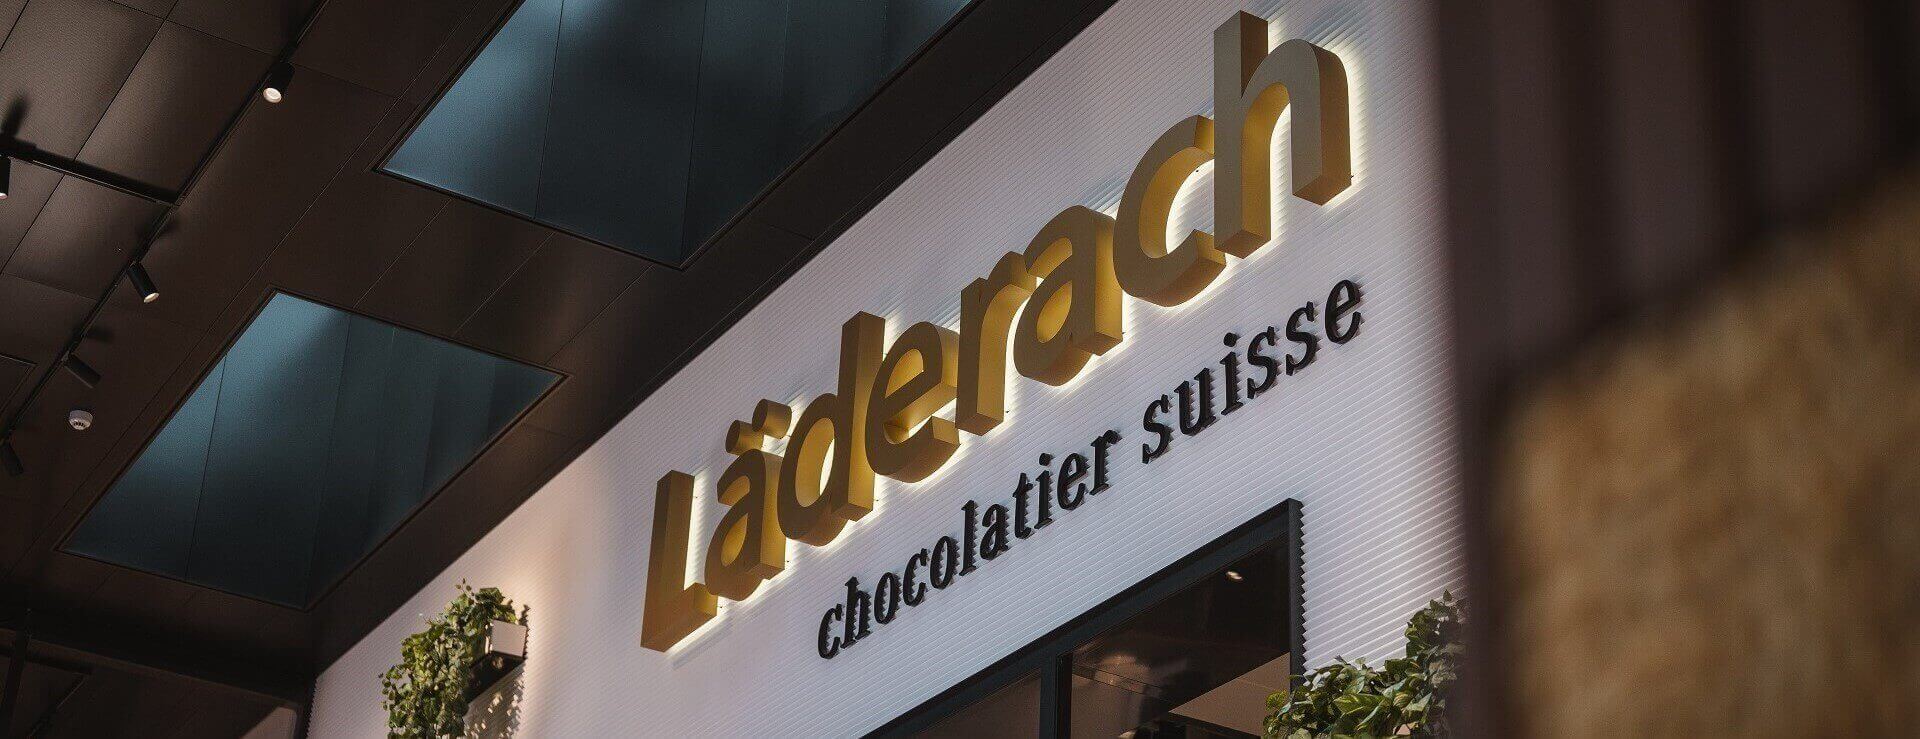 Läderach chocolatier suisse reprend les baux de 34 magasins aux États-Uni